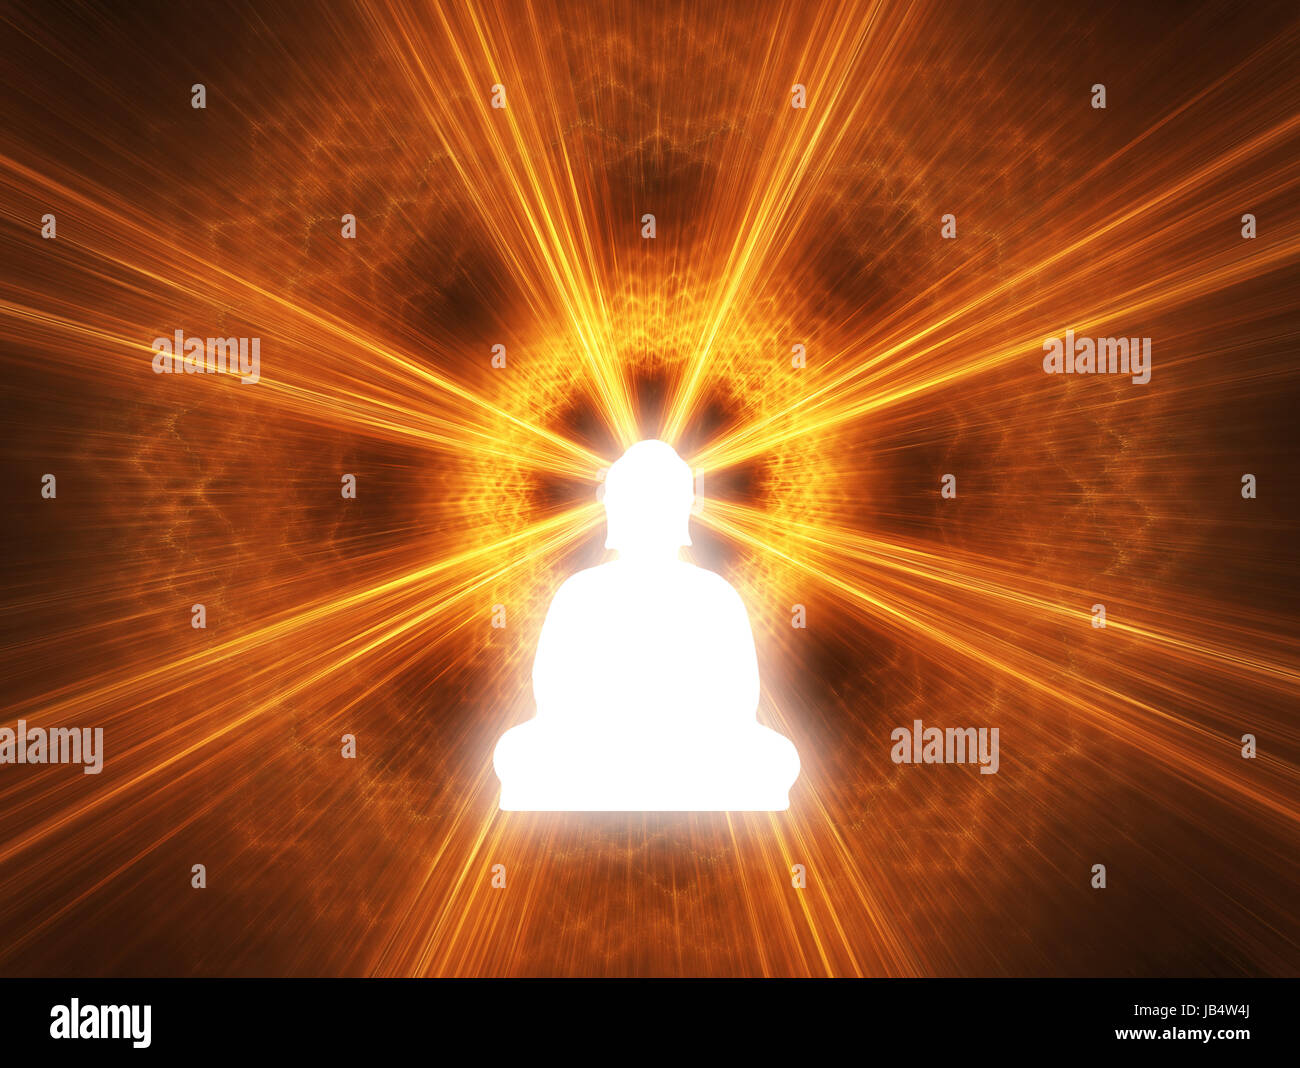 Silhouette eines Buddha mit einem weißen Glanz. Digital erzeugte Bild. Stockfoto